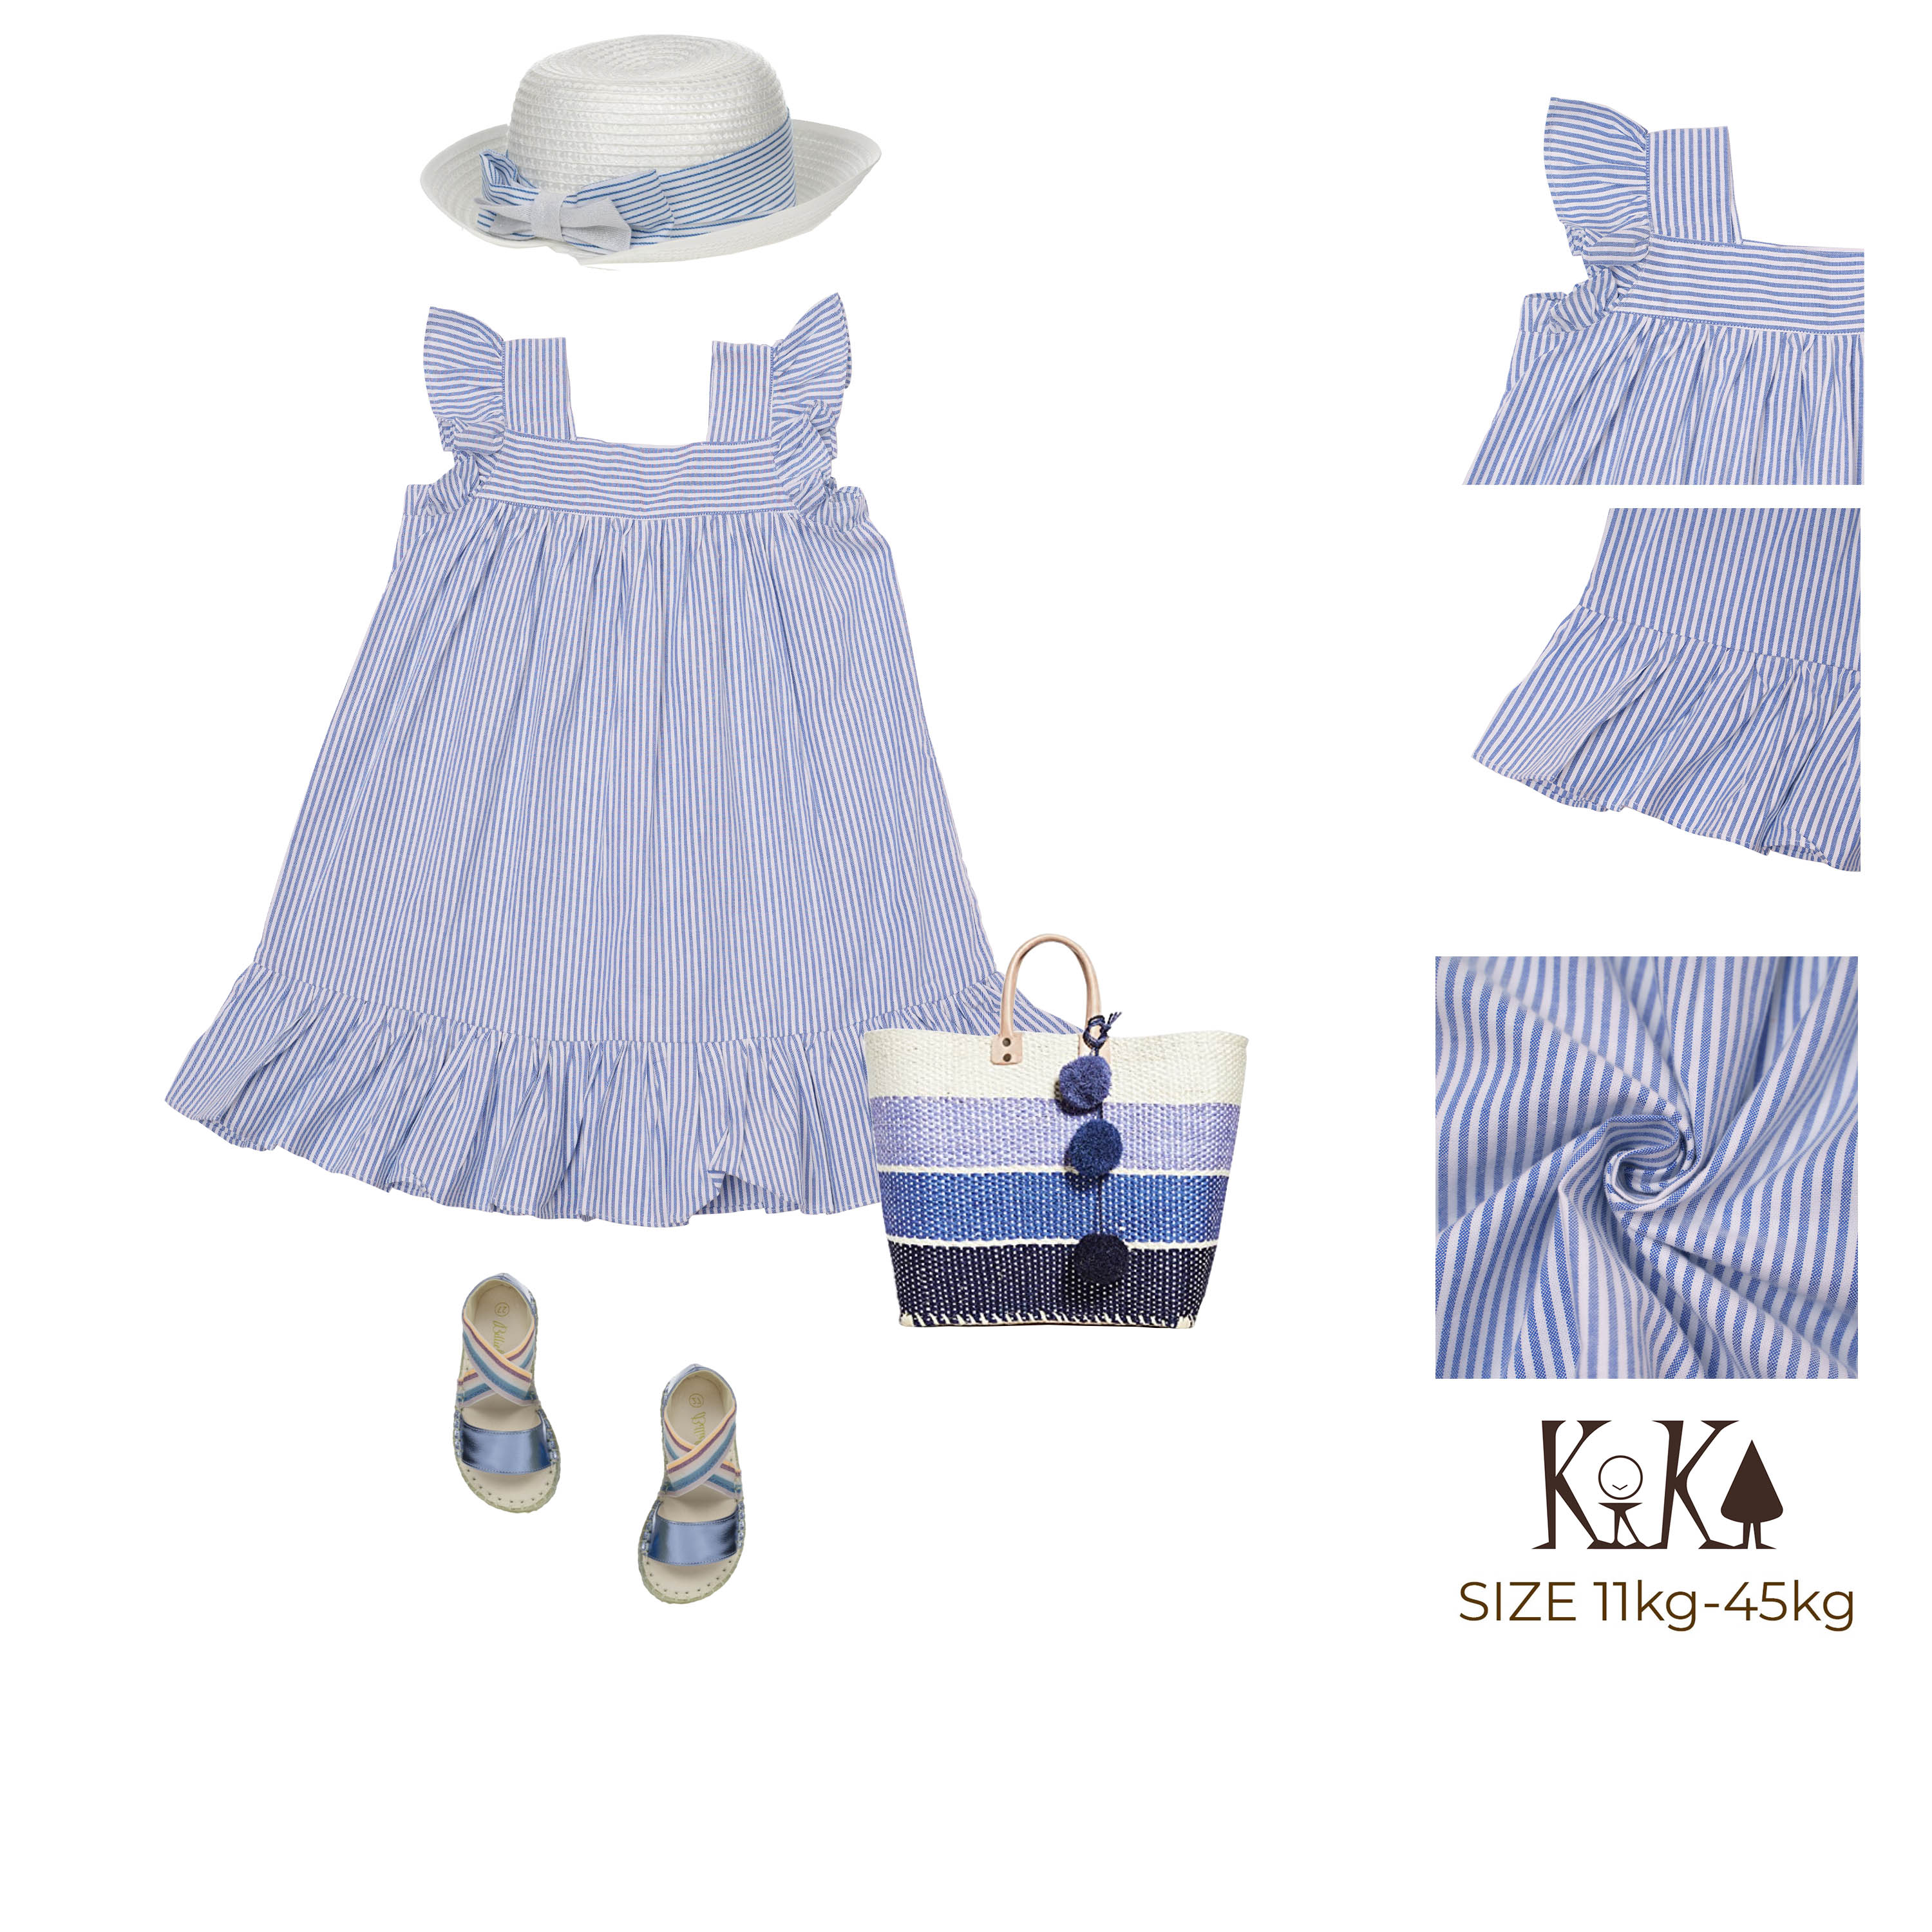 Váy - Đầm Trẻ Em: Đầm xinh phom ngắn tay cánh tiên size nhí cho bé gái nhỏ  từ 13kg đến 15kg màu xám tim hồng